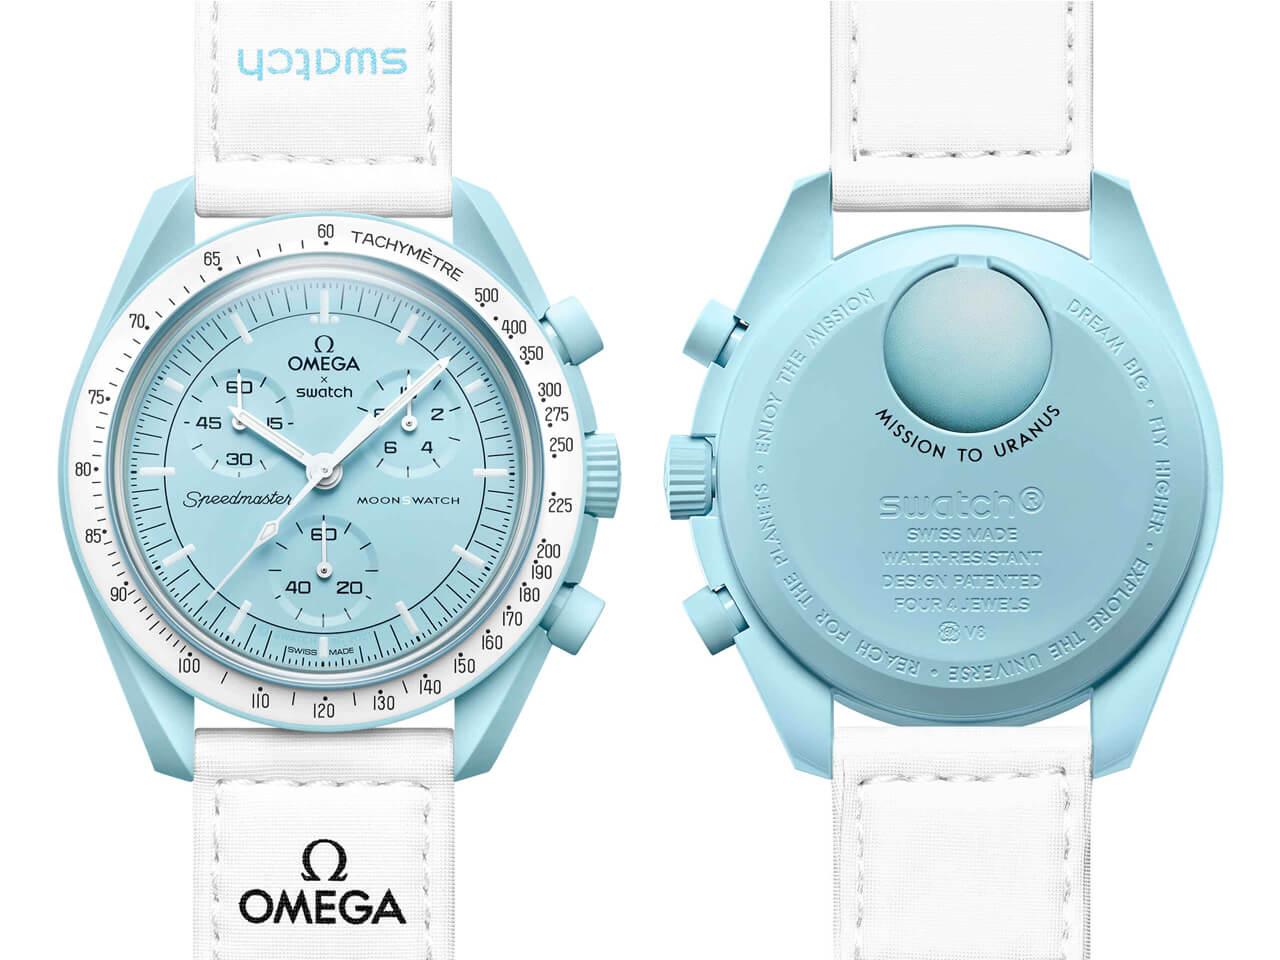 クリアランス販売 MoonSwatch Swatch OMEGA オメガスウォッチ ウラヌス ネット:20728円 ブランド:スウォッチ  腕時計 (アナログ)